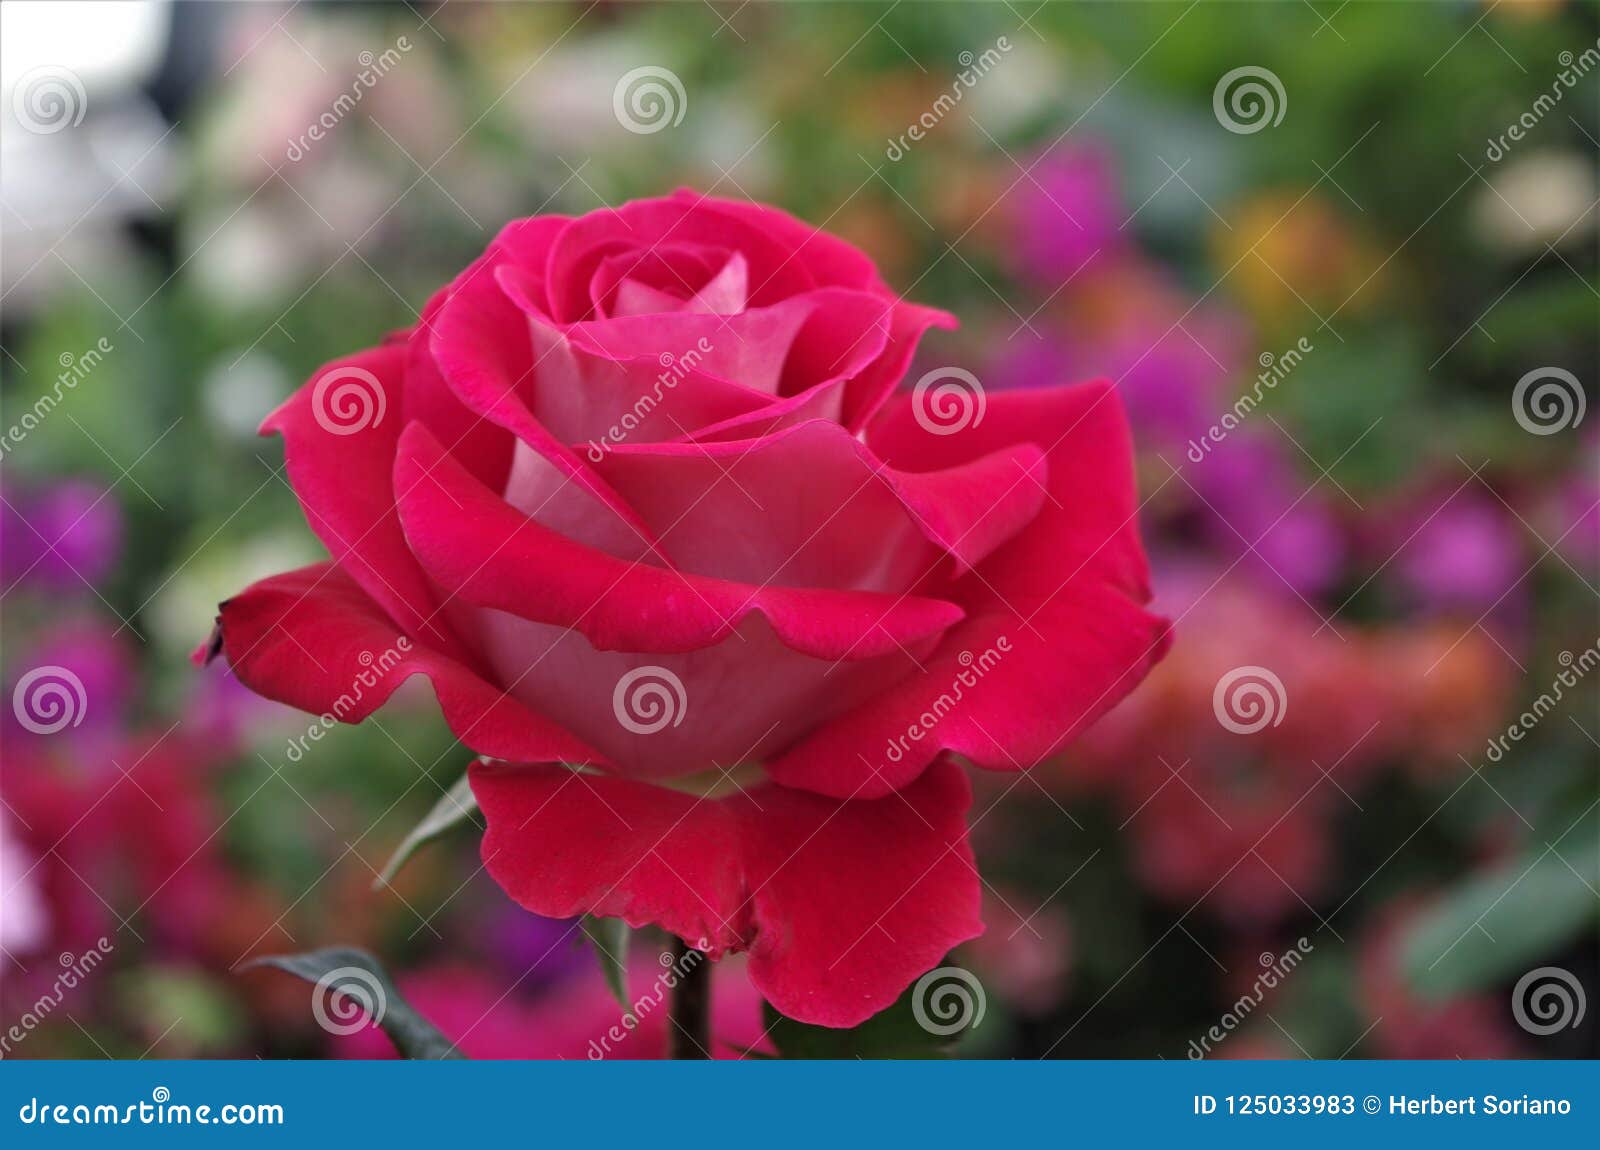 red rose closeup on a honduras national park la ceiba cuero y salado